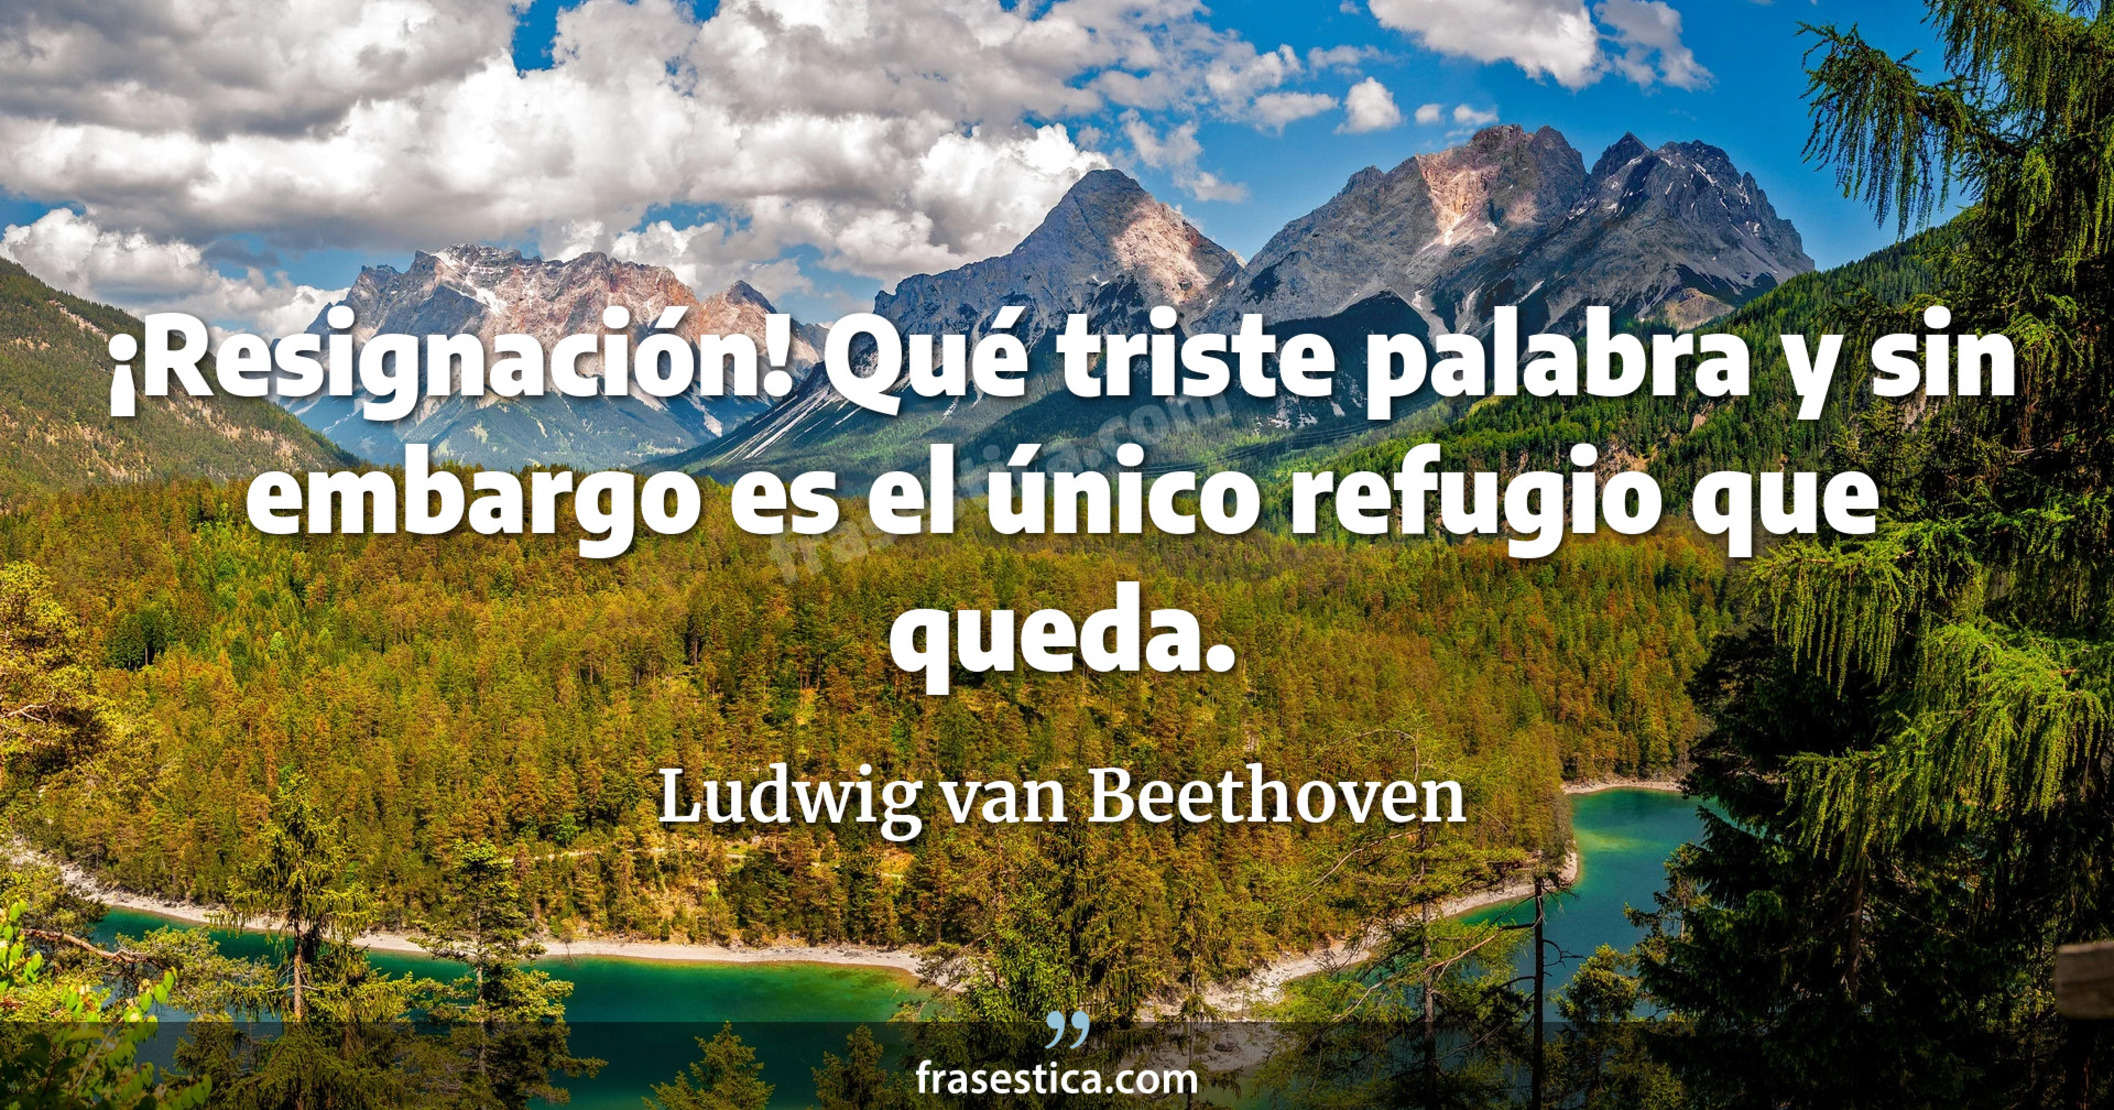 ¡Resignación! Qué triste palabra y sin embargo es el único refugio que queda. - Ludwig van Beethoven